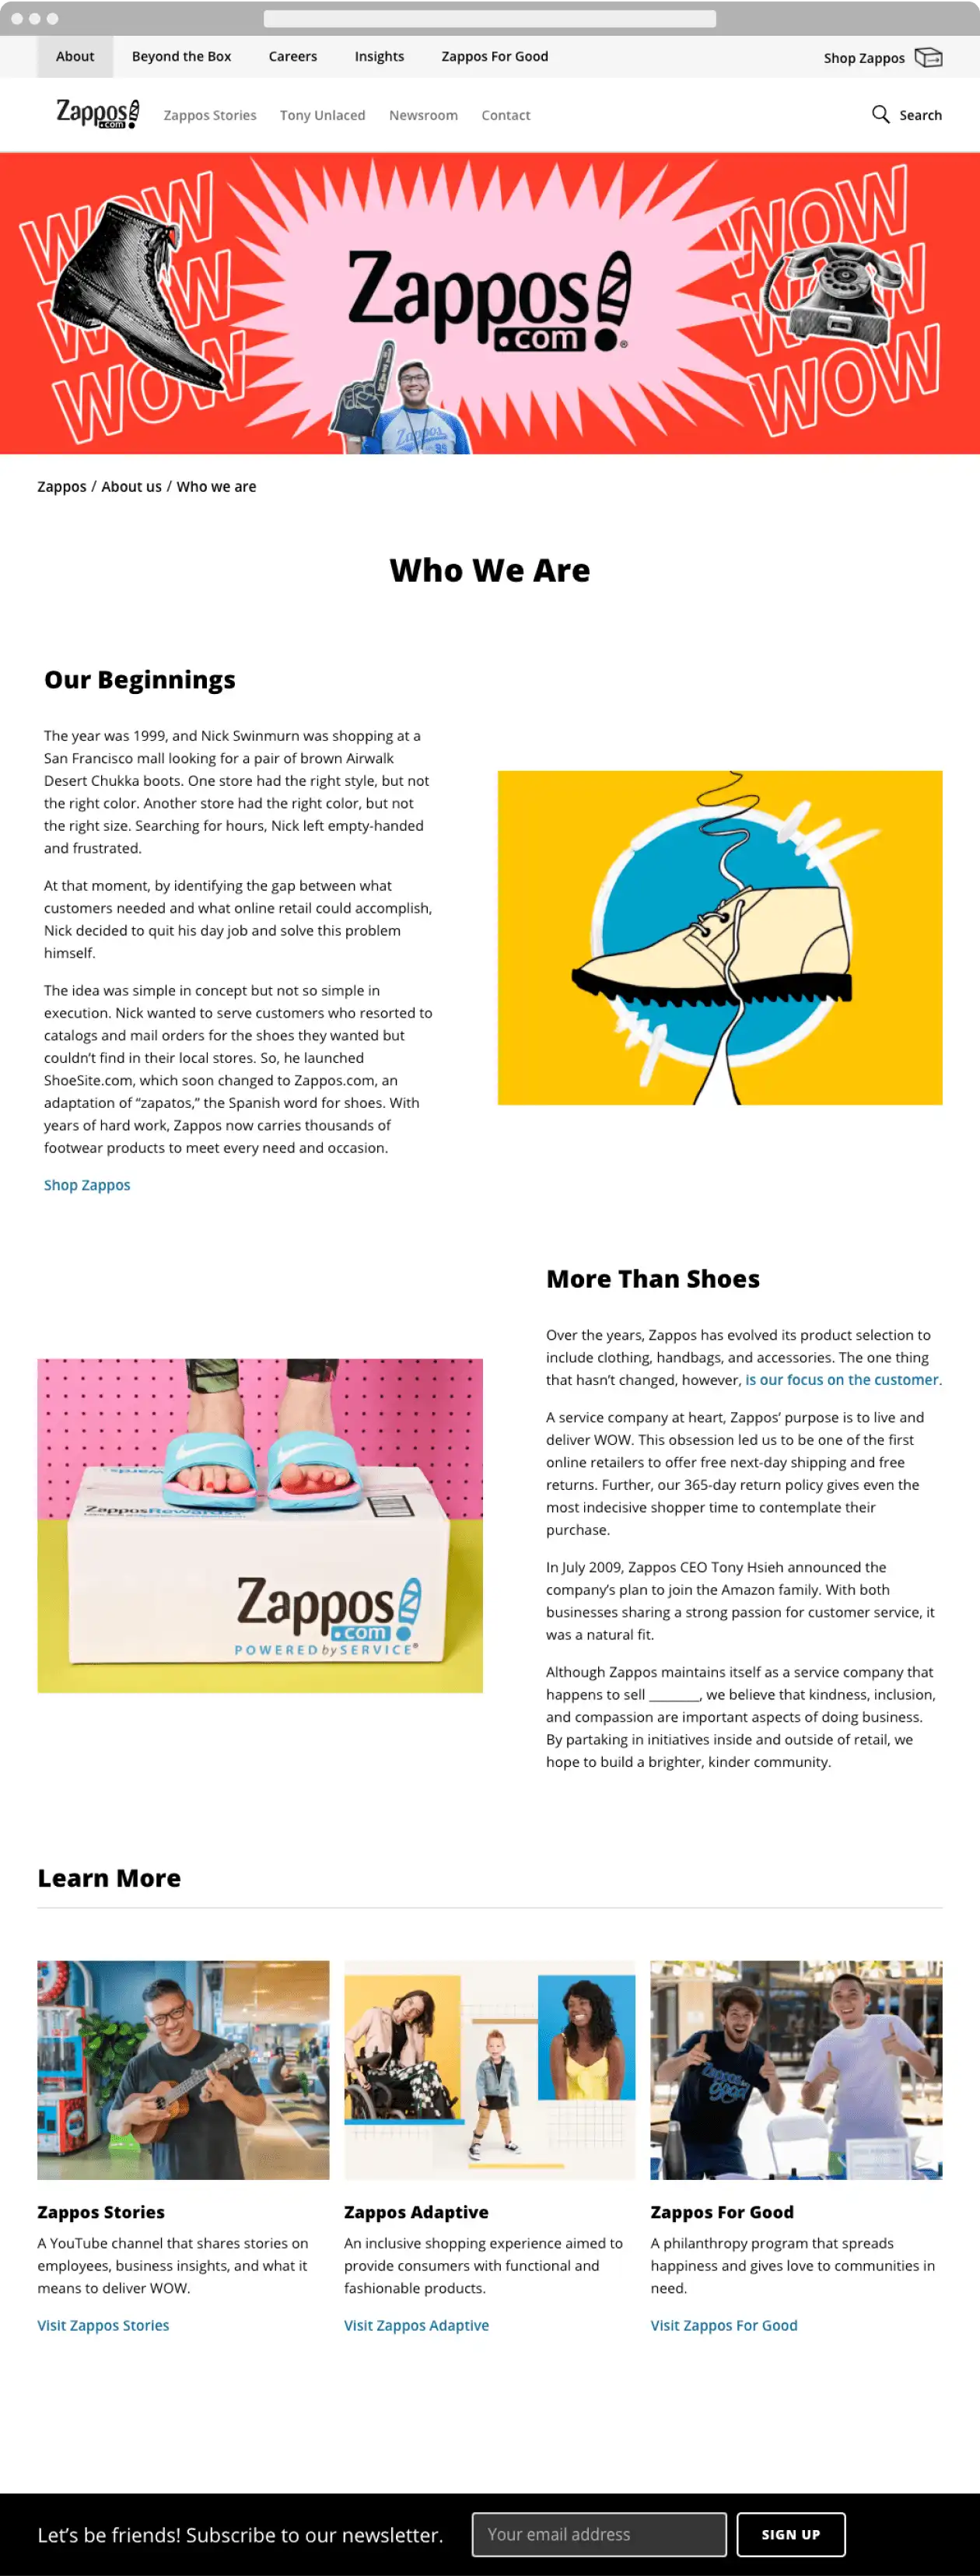 Das Unternehmen Zappos baut auf der Unterseite "Über uns" das Image eines Freundes auf